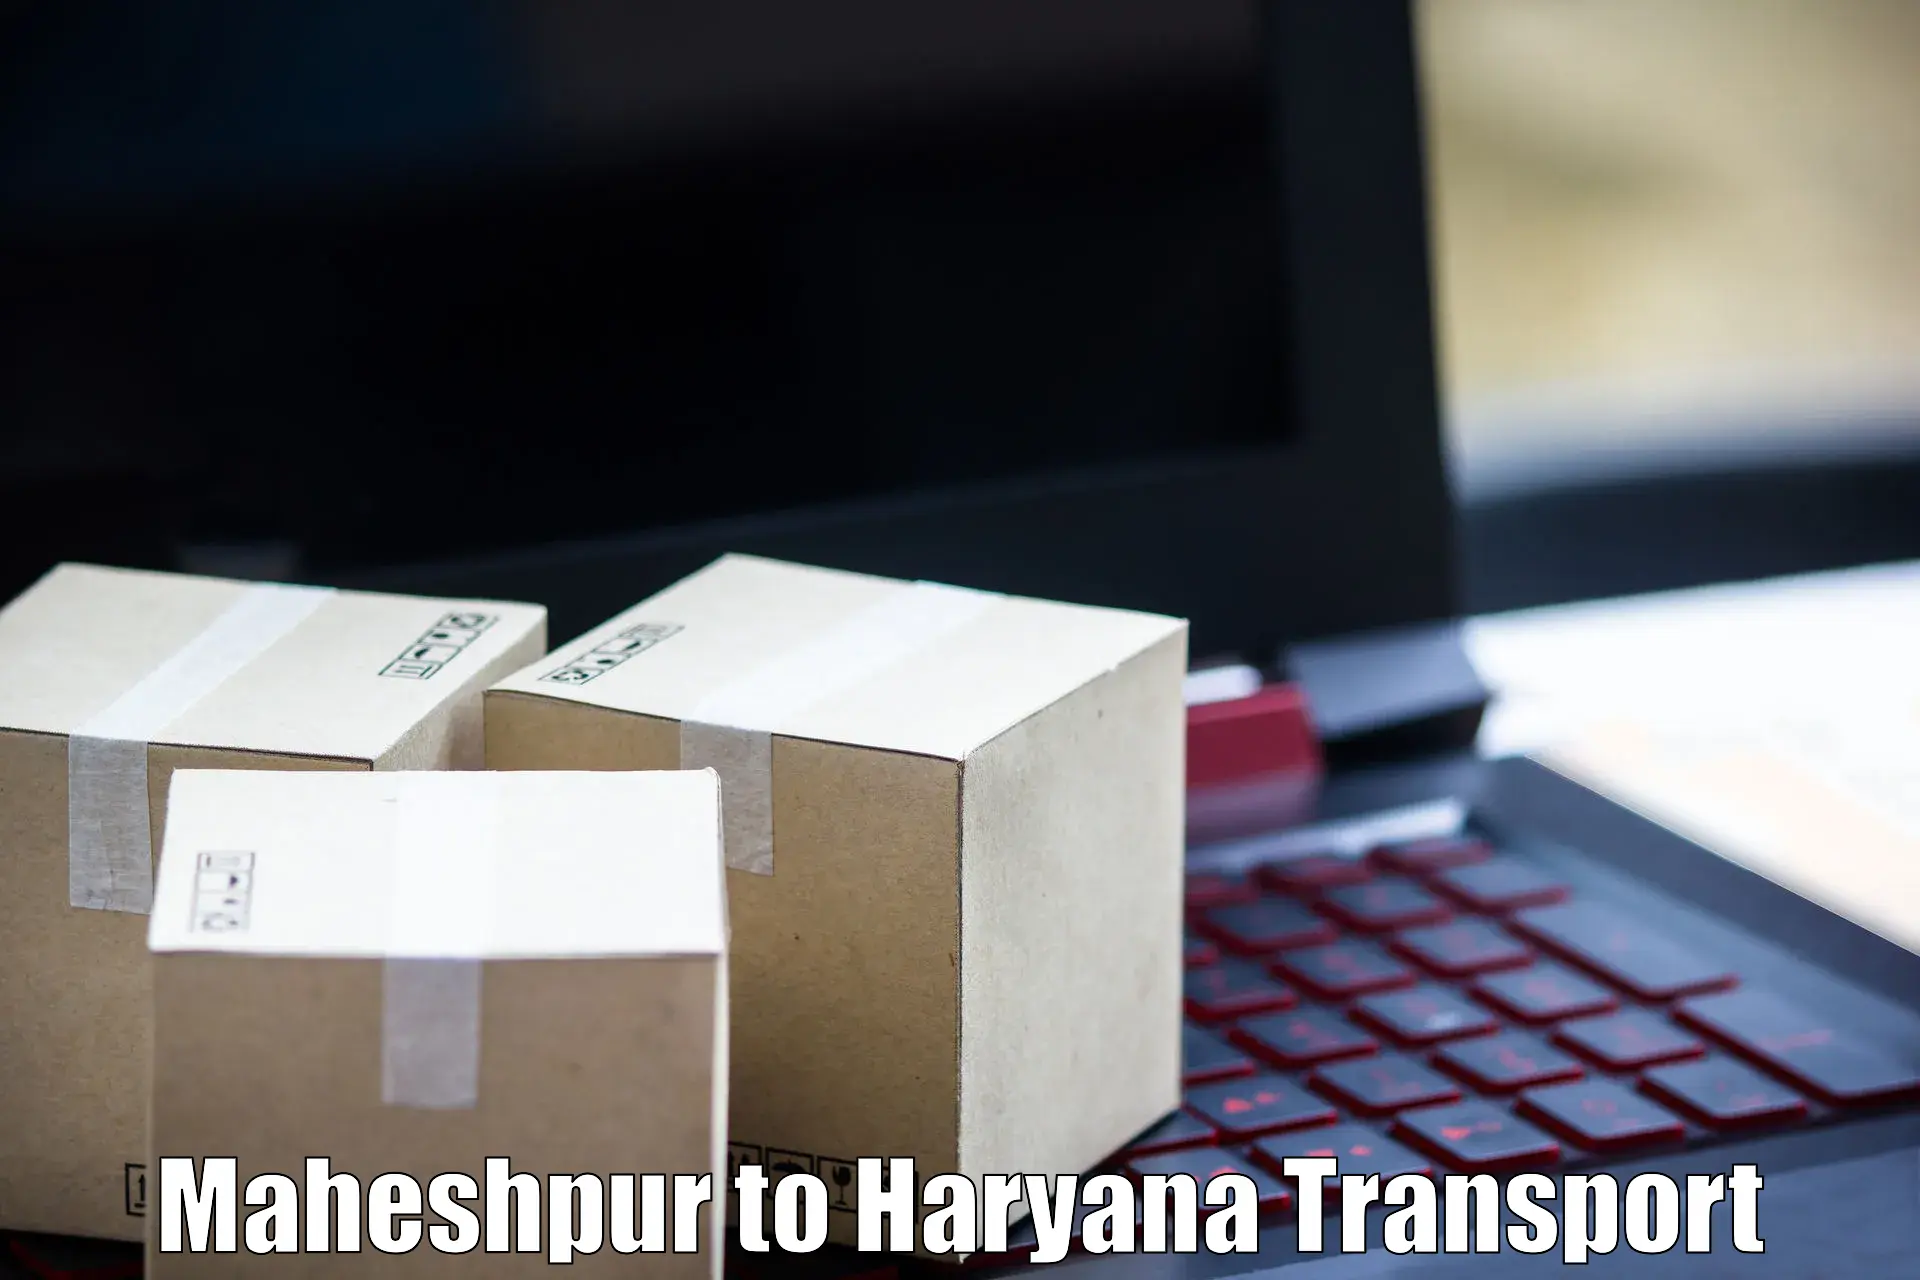 Furniture transport service Maheshpur to Bilaspur Haryana